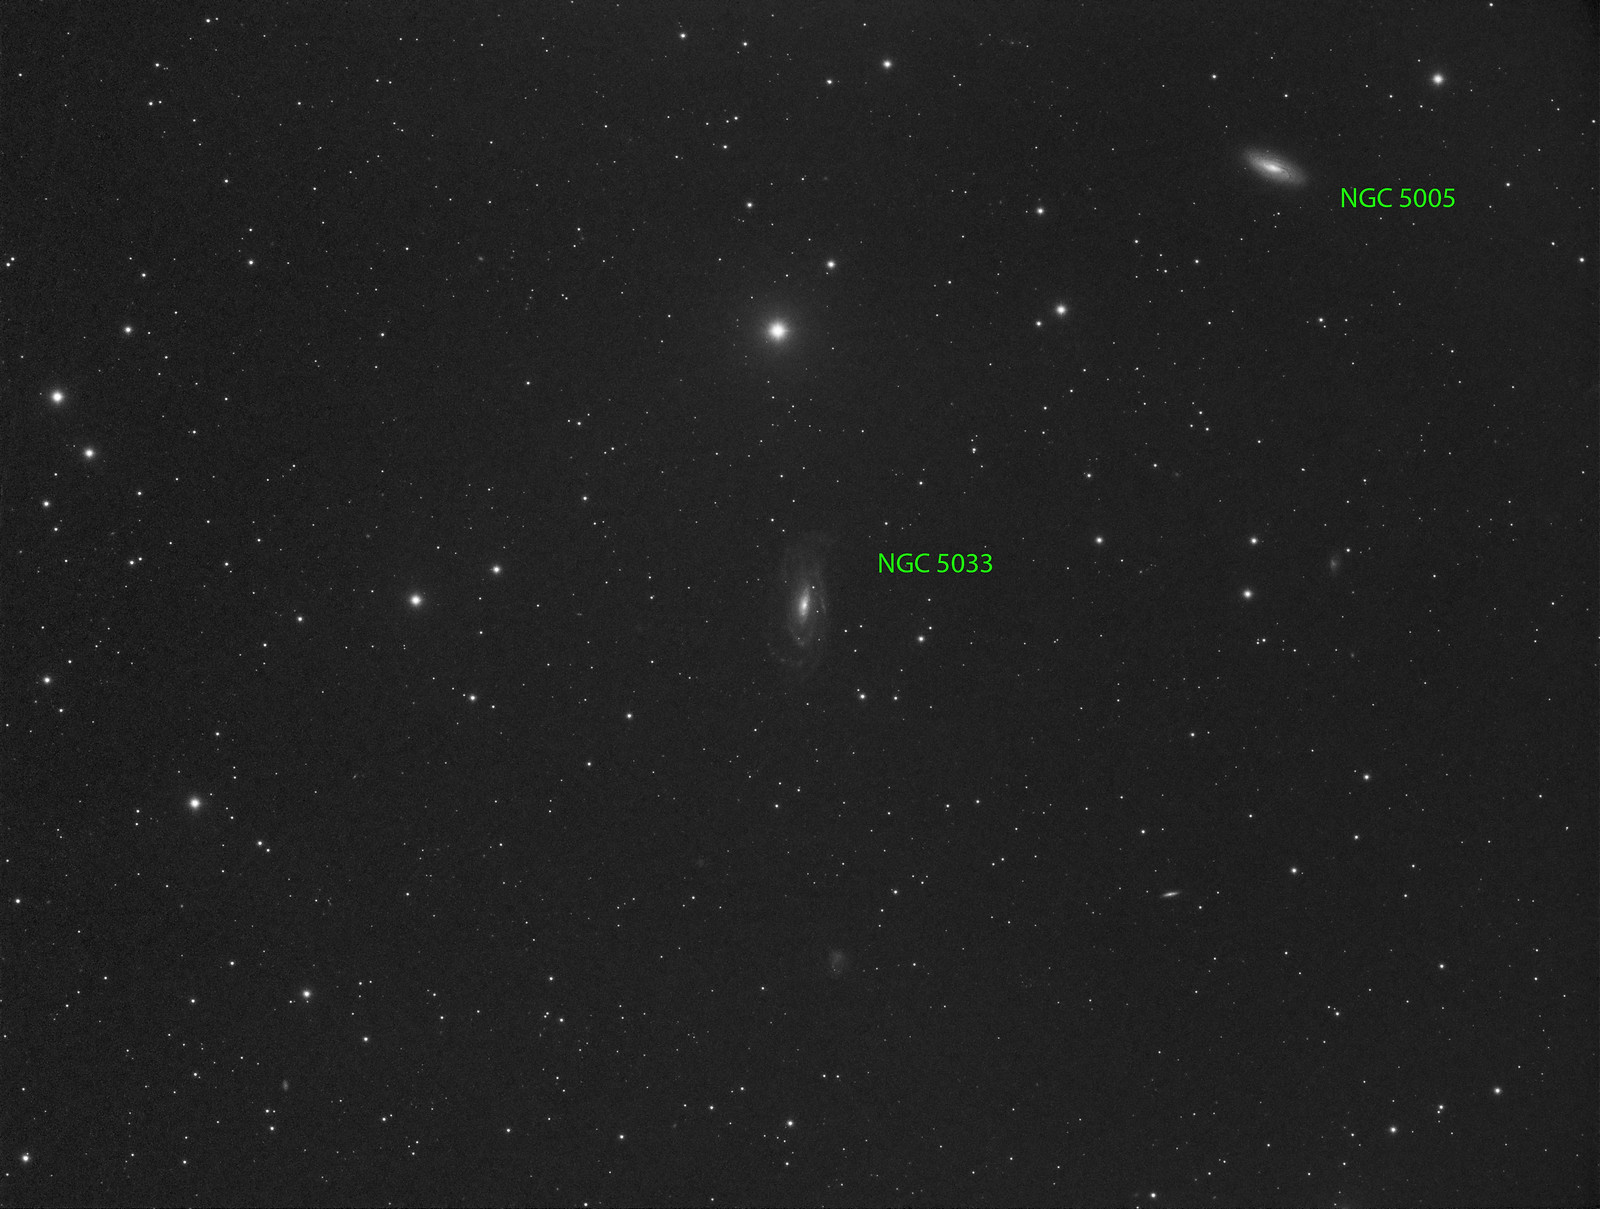 029 - NGC 5005  - Luminance